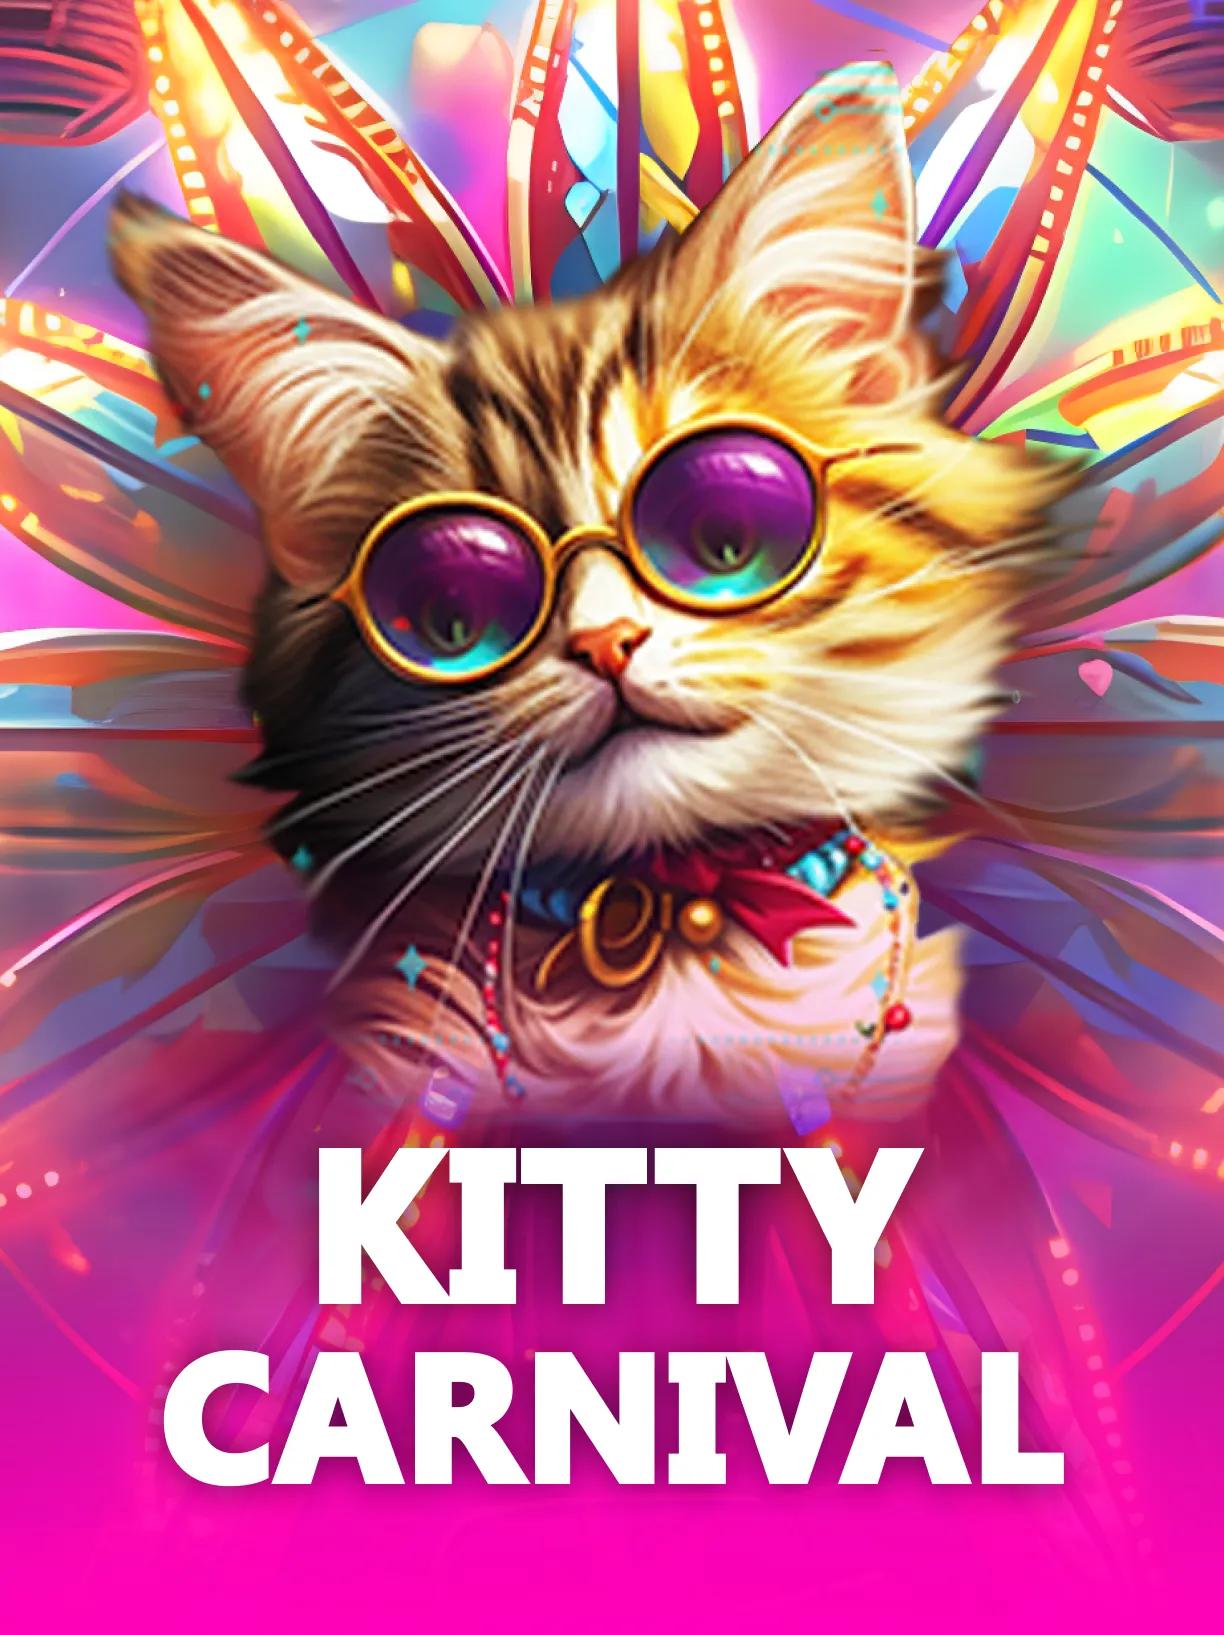 ug-Kitty-Carnival-square.webp